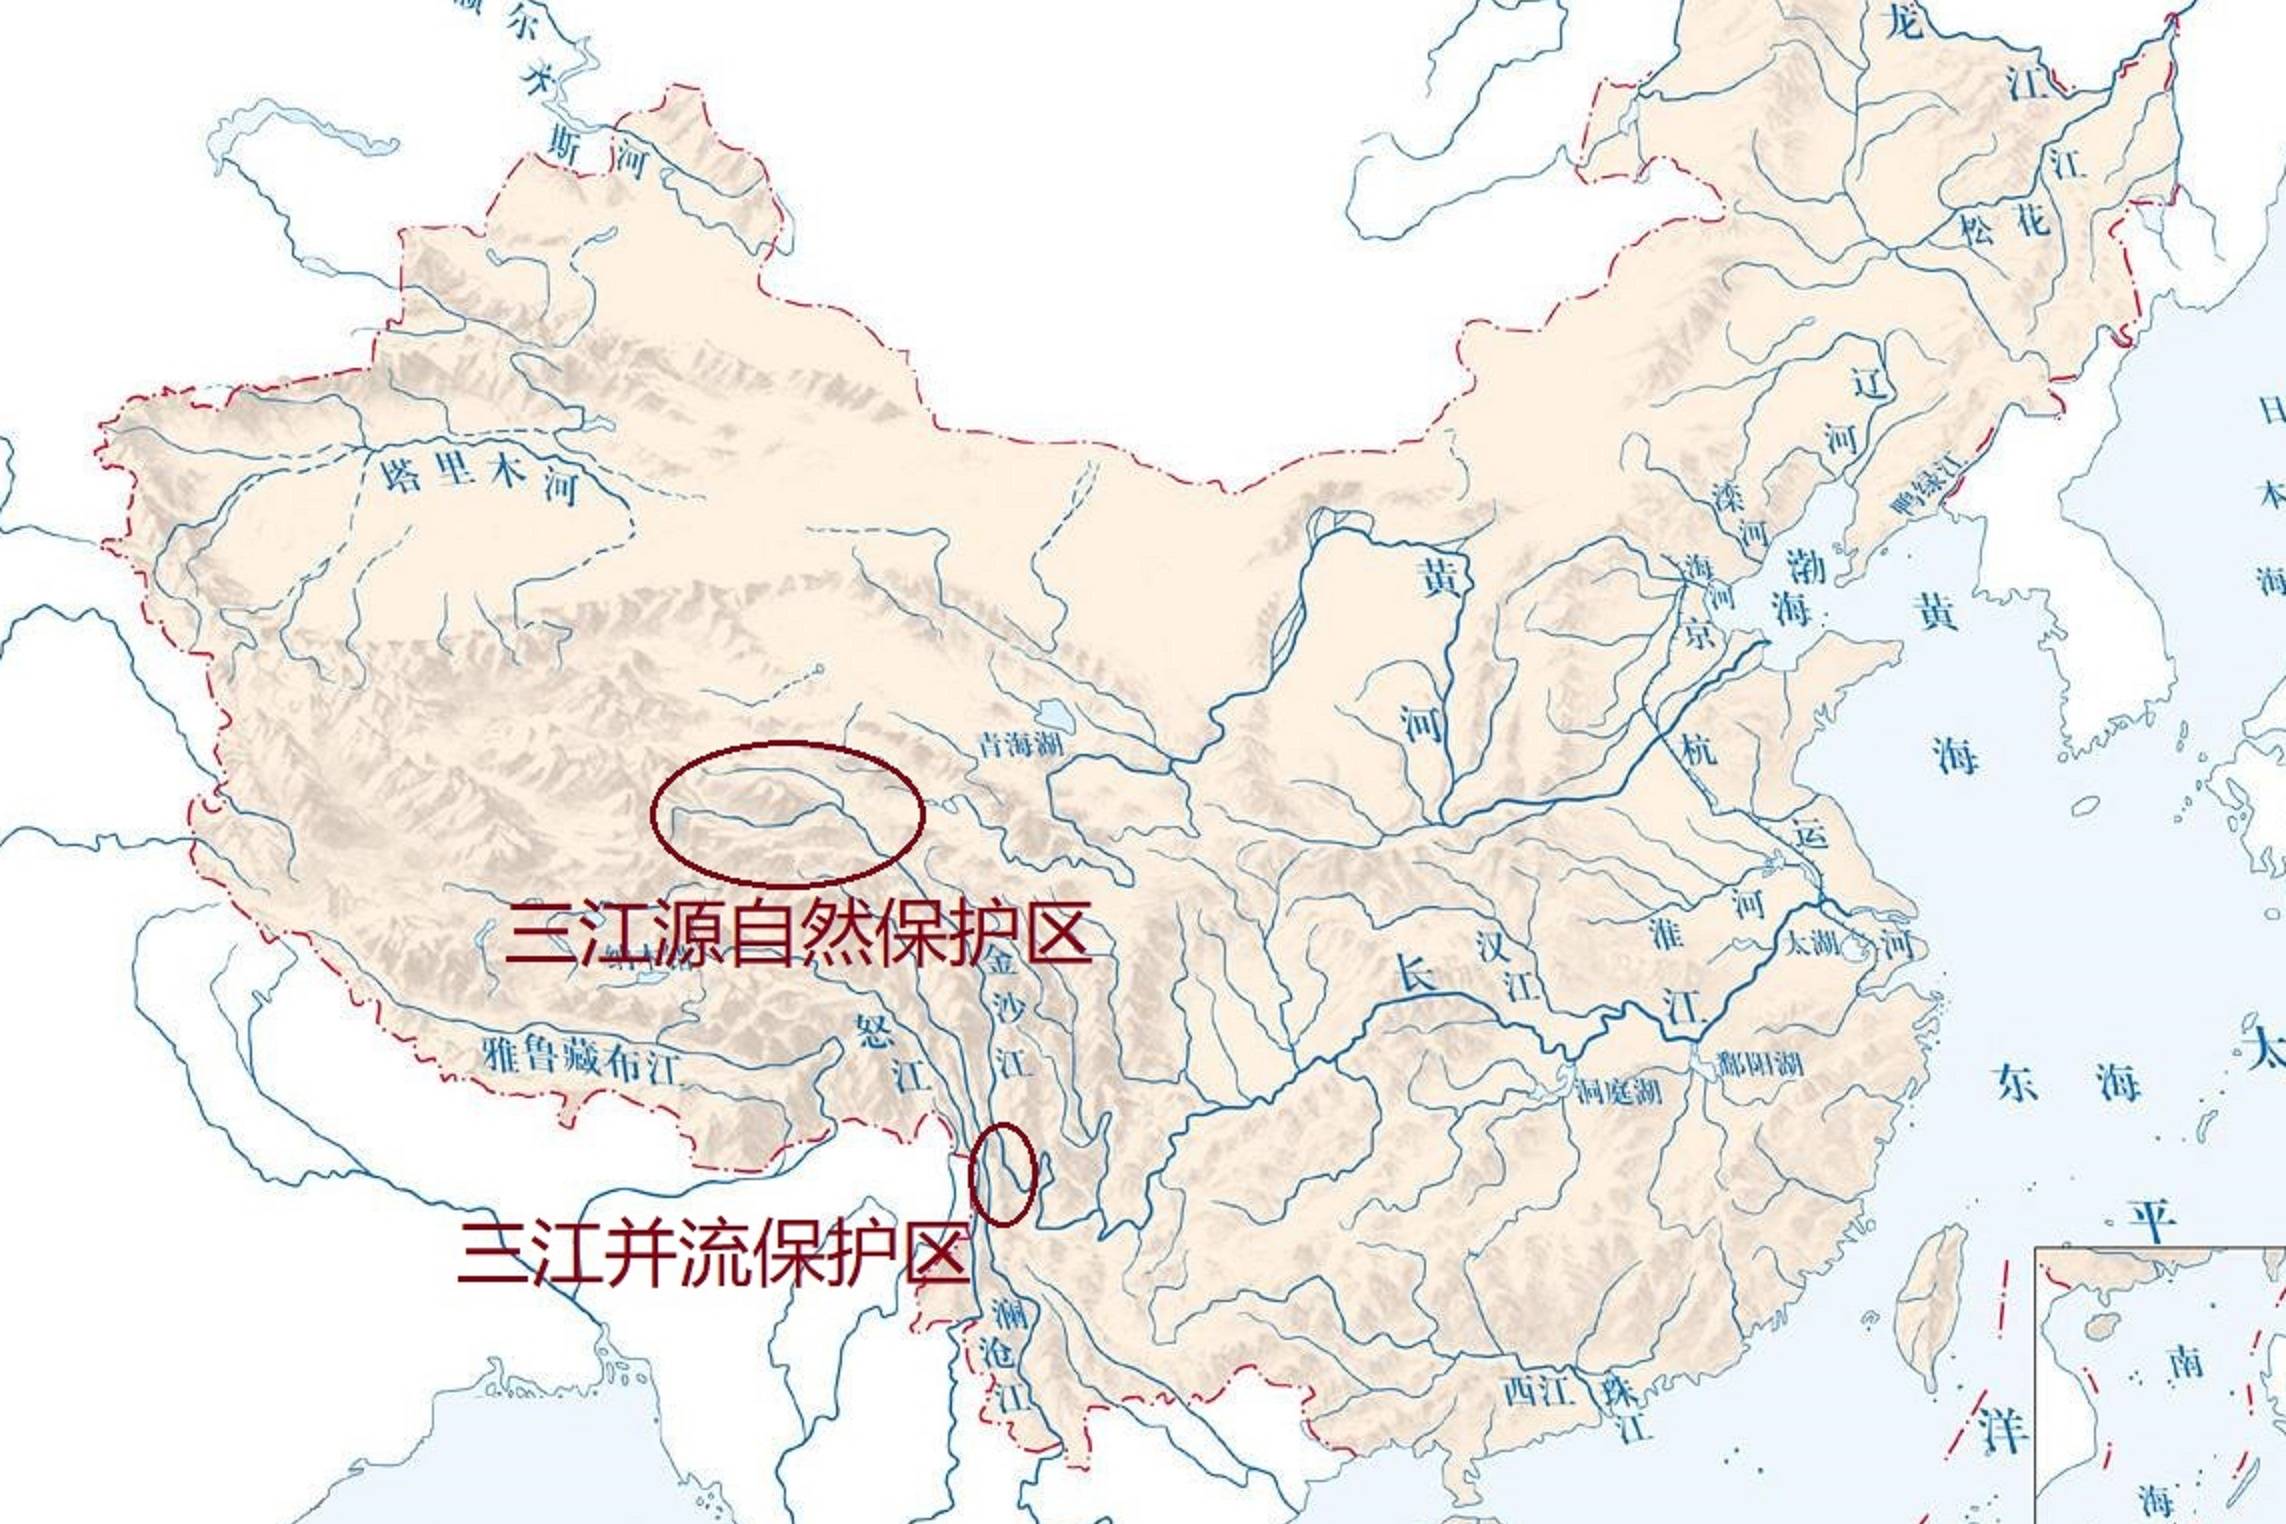 你知道三江源和三江并流地区分别在哪里吗